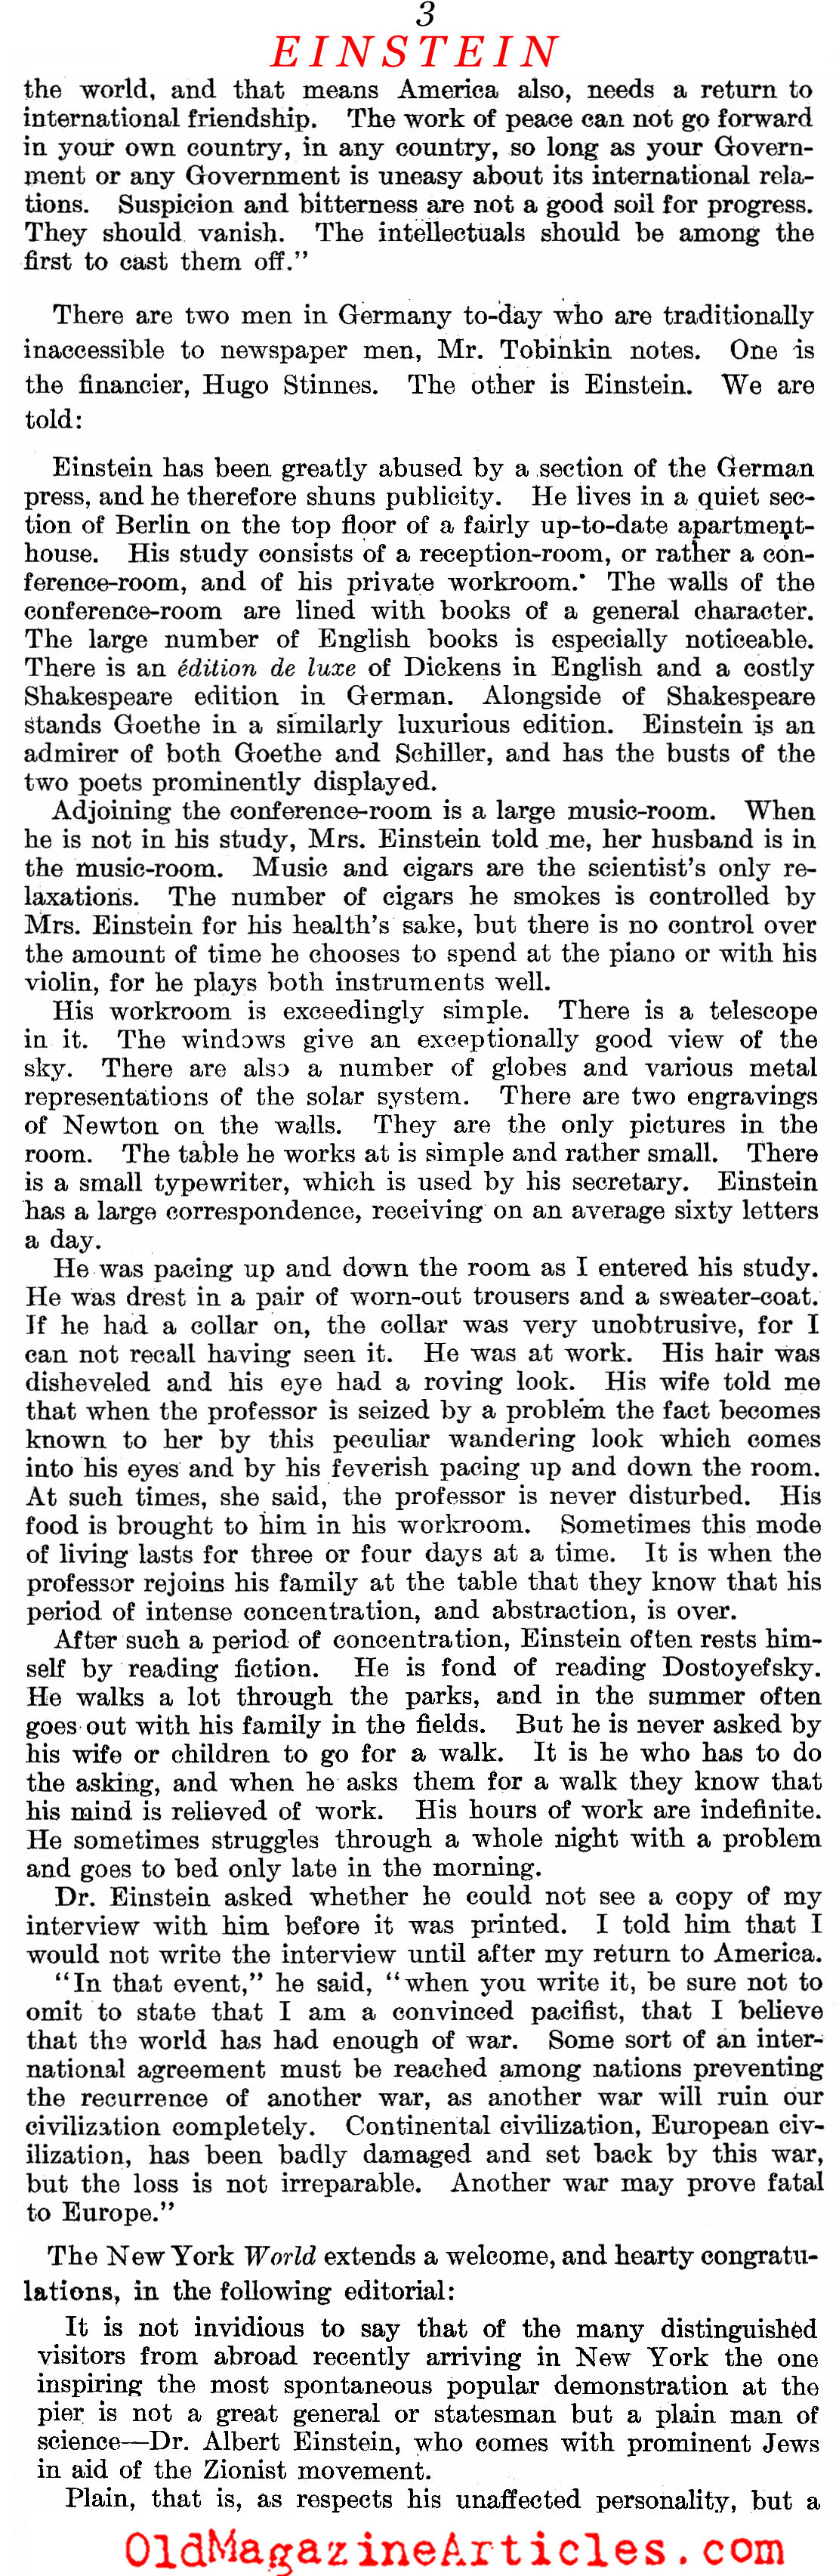 Einstein Comes to America (Literary Digest, 1921)